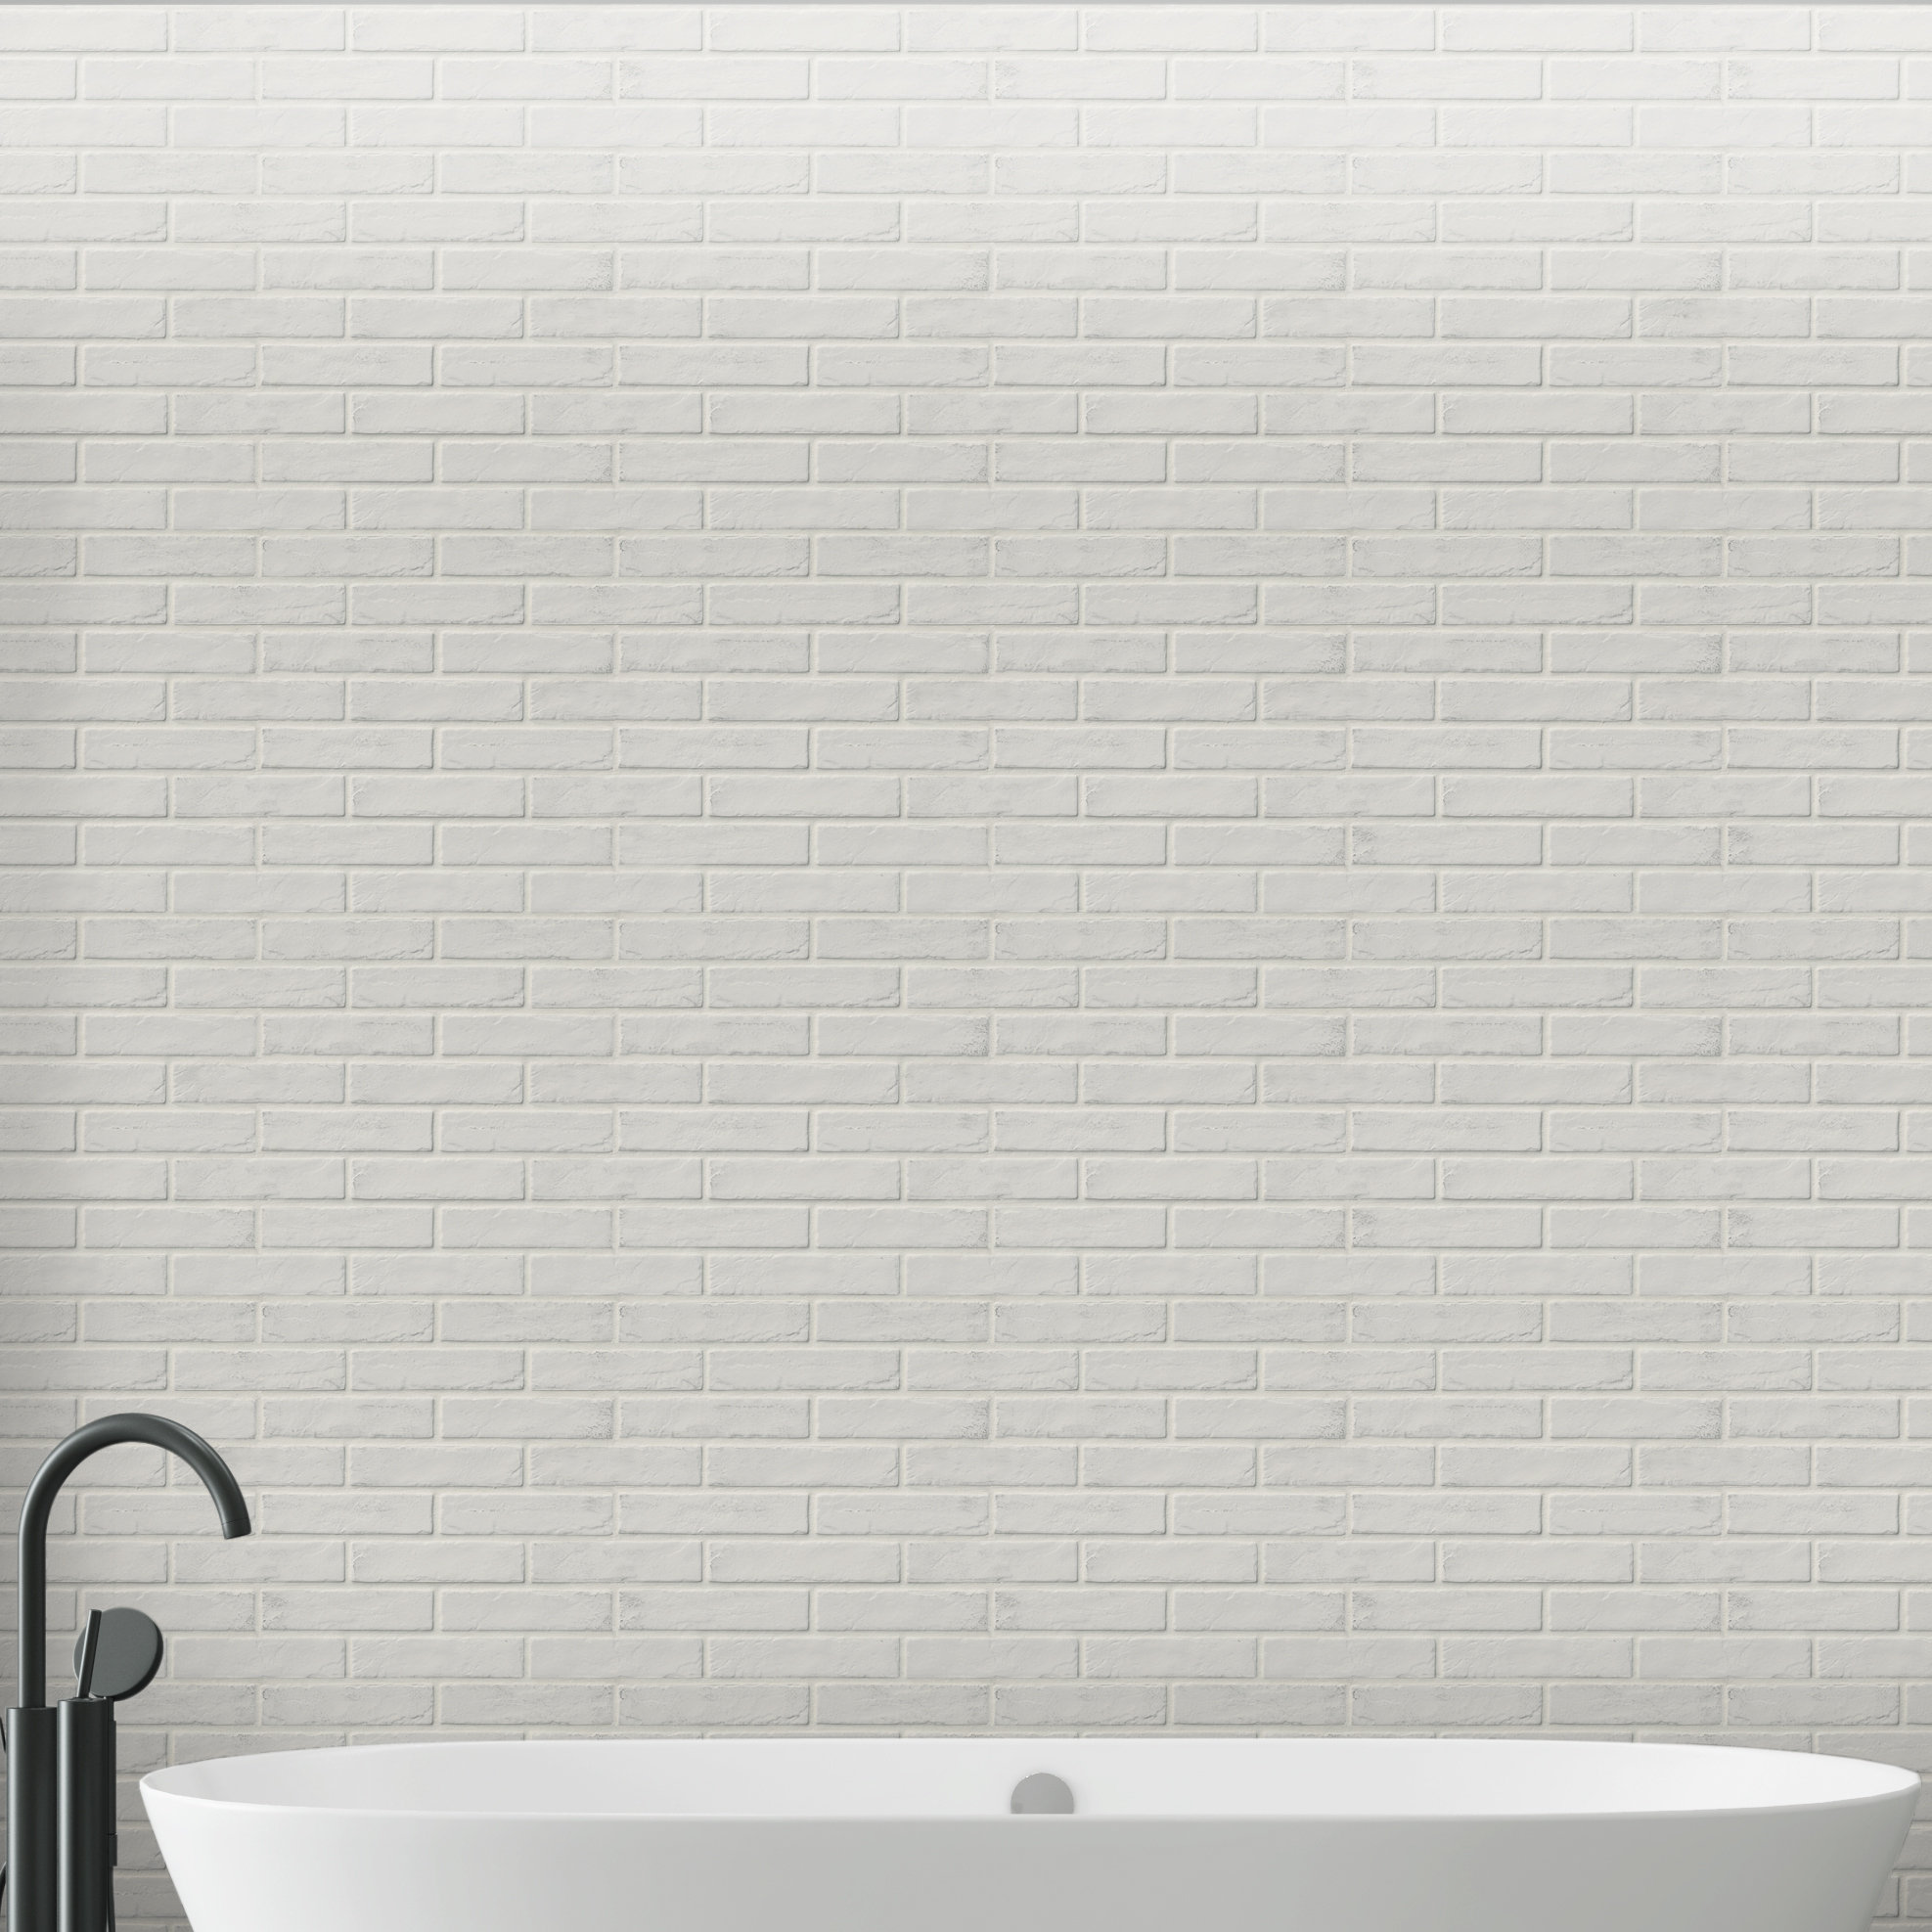 brick tiles for shower walls like